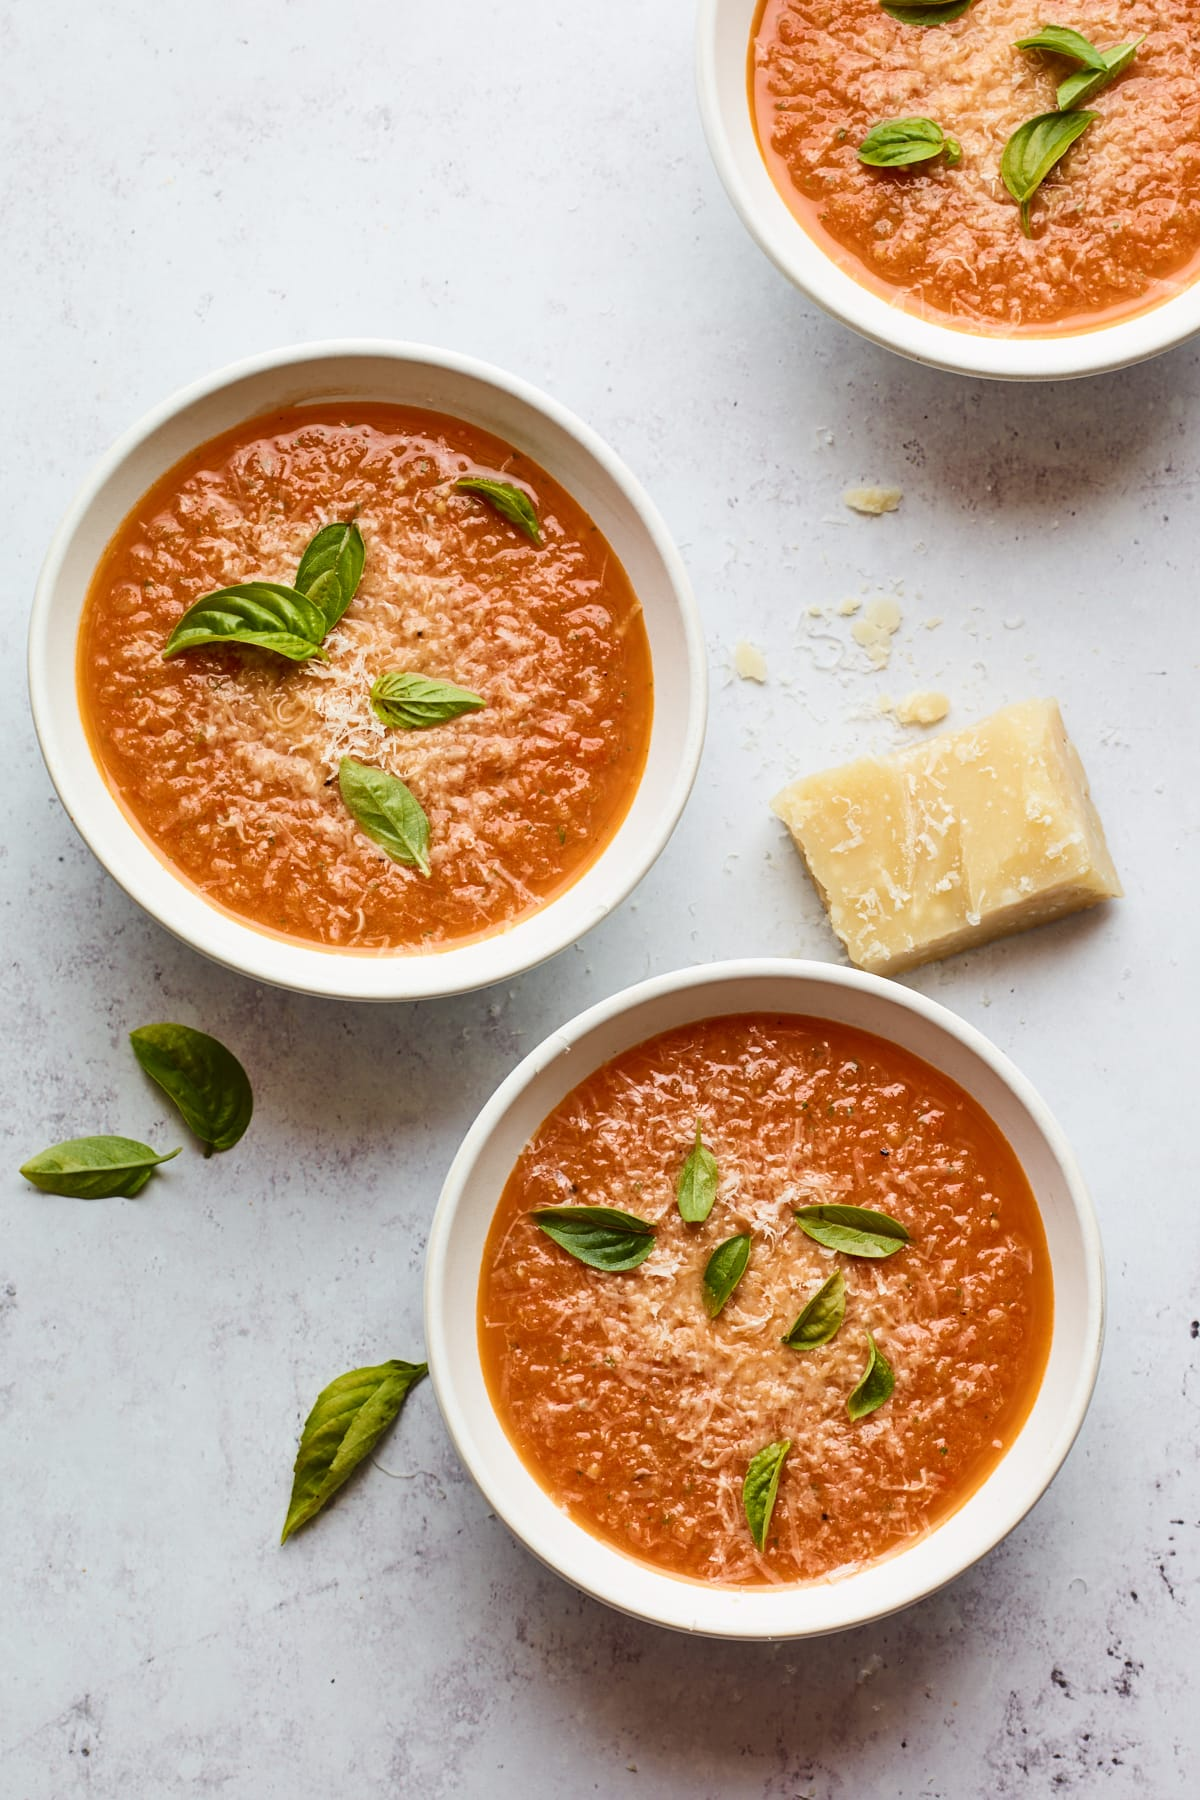 Três taças contendo sopa de manjericão de tomate. Cada tigela é coberta com folhas frescas de manjericão e há uma cunha de queijo parmesão que descansa perto das tigelas.